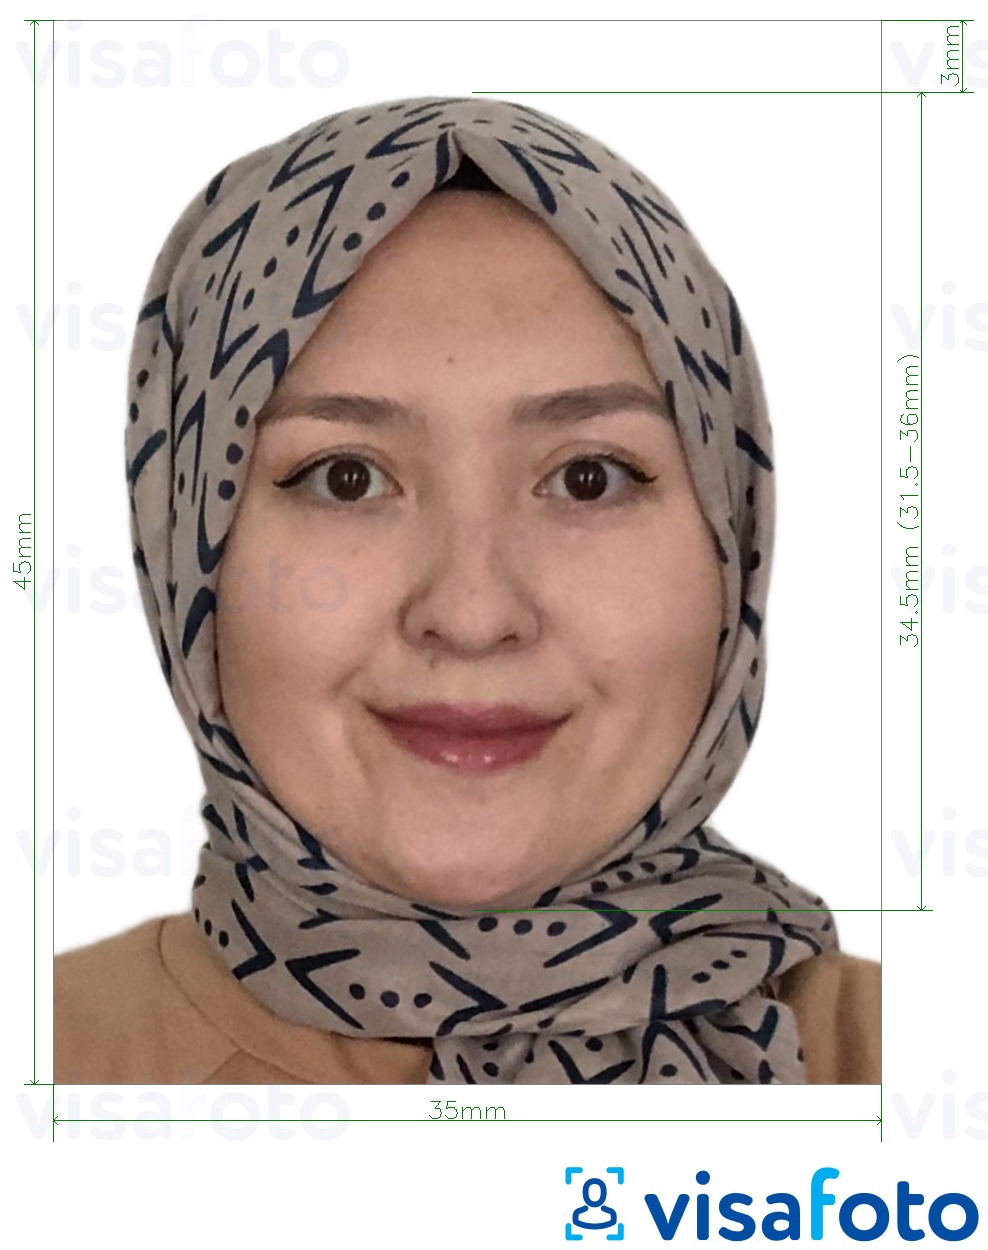 정확한 사이즈 크기의 타지키스탄 여권 3.5x4.5cm (35x45mm) 사진의 예